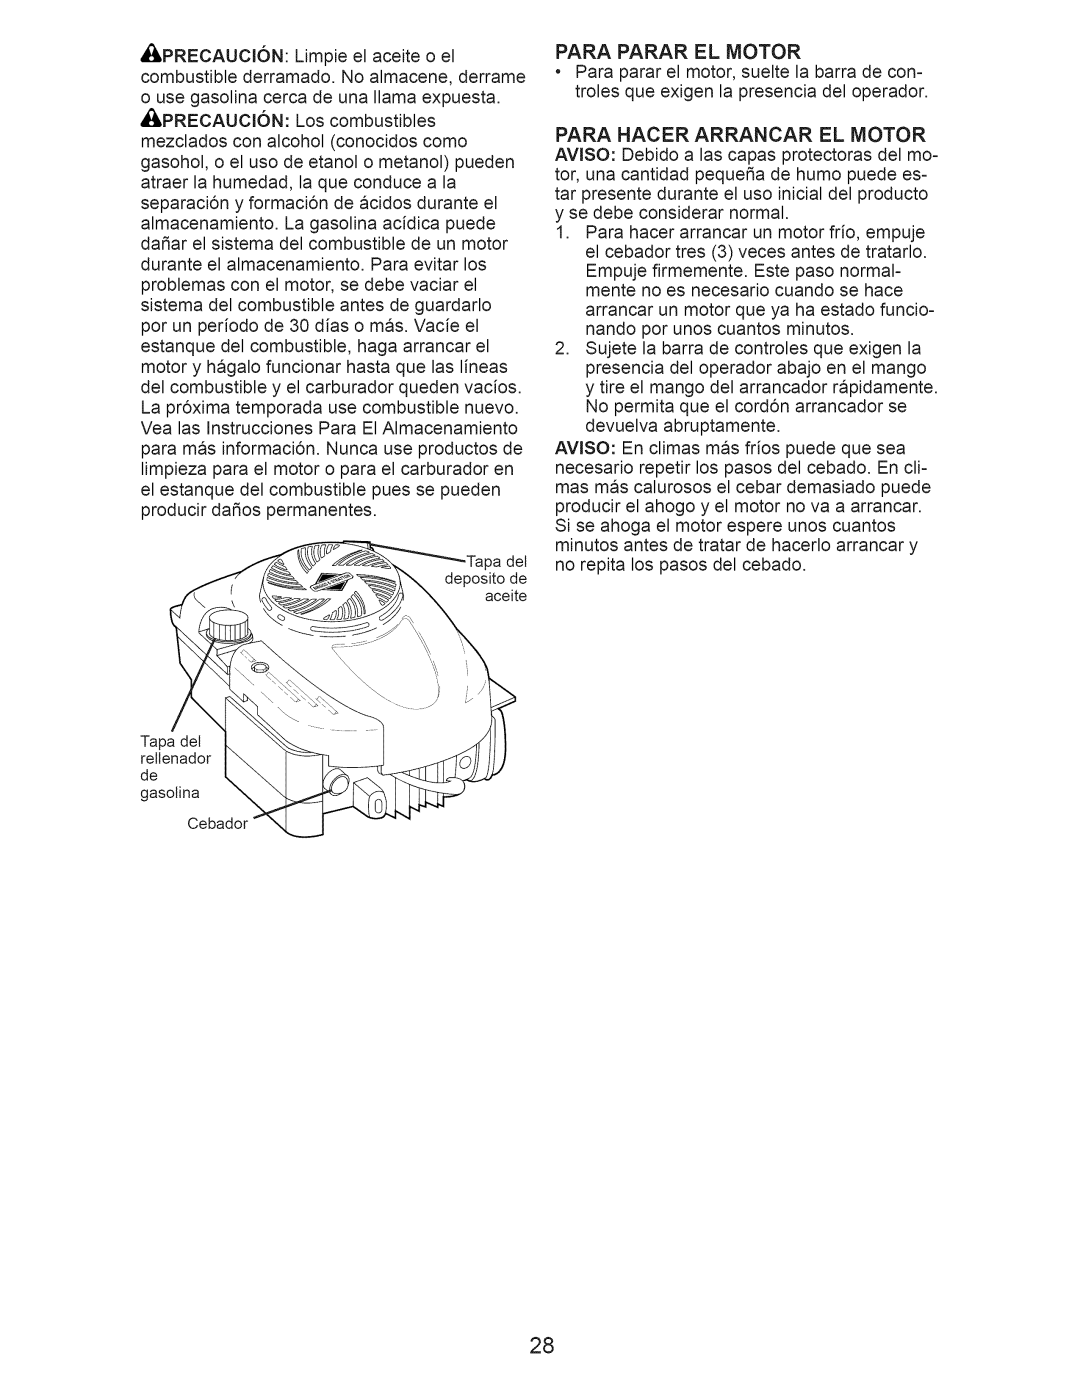 Craftsman 917.376230 manual Para Hacer Arrancar El Motor 